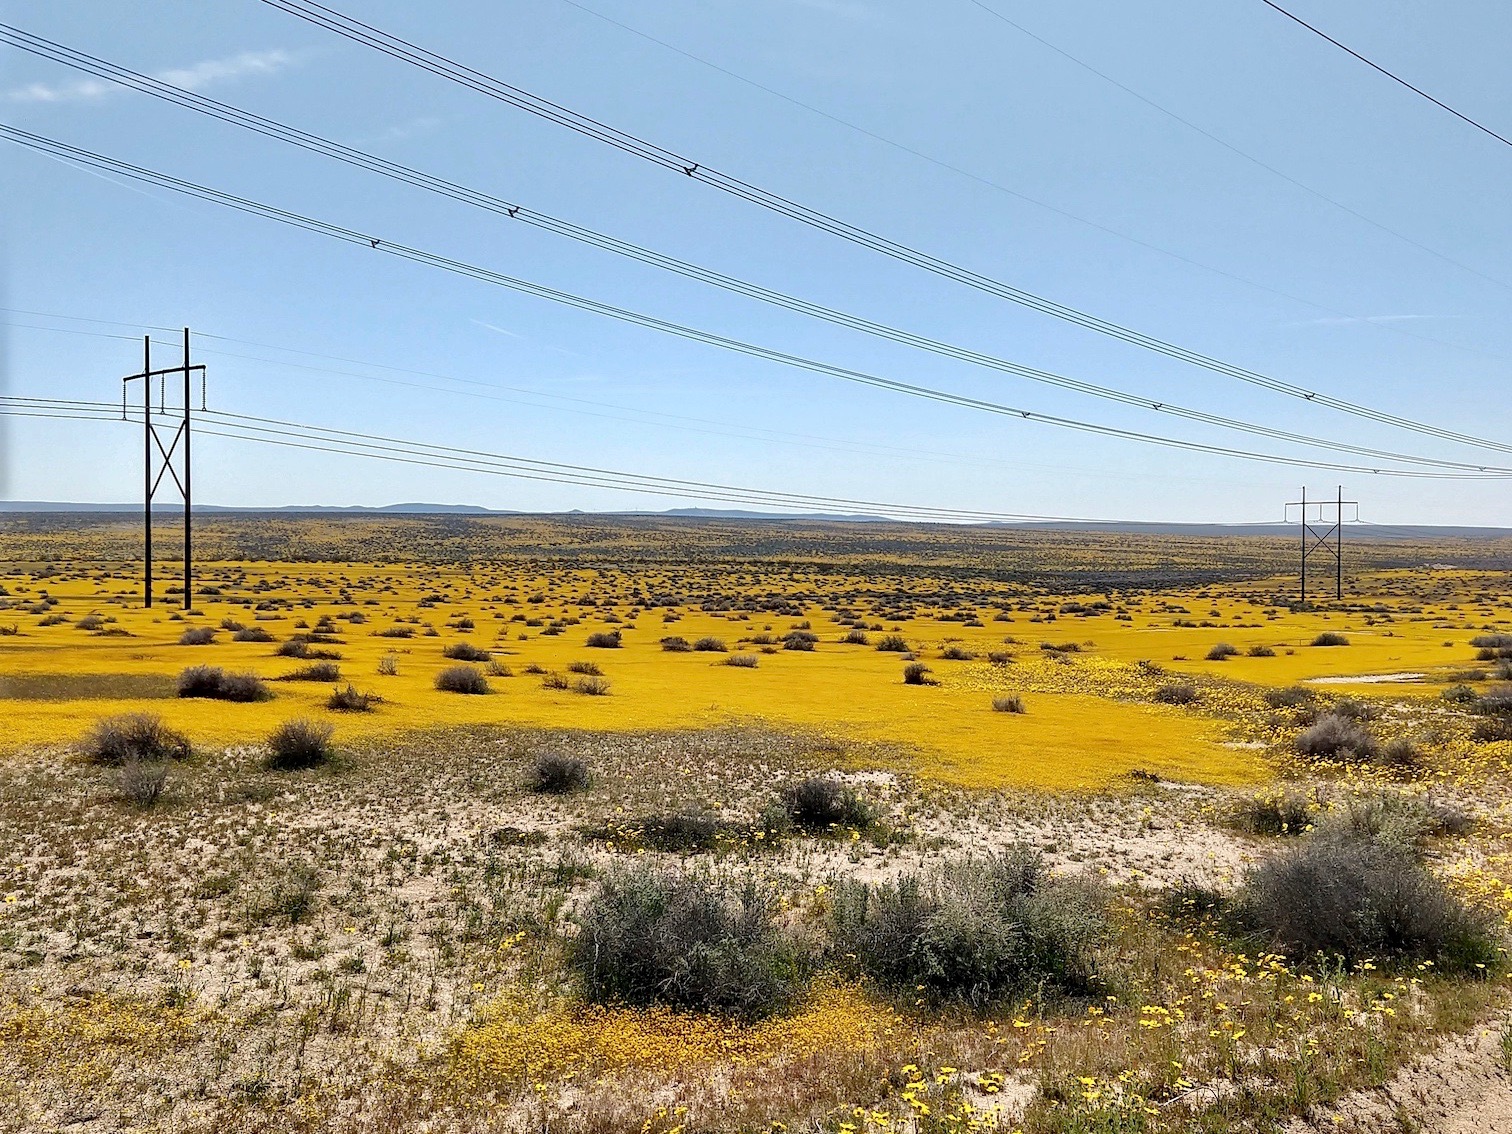 Wildflowers blanket the desert near the UC Davis study site in the Mojave Desert. (Karen Tanner)